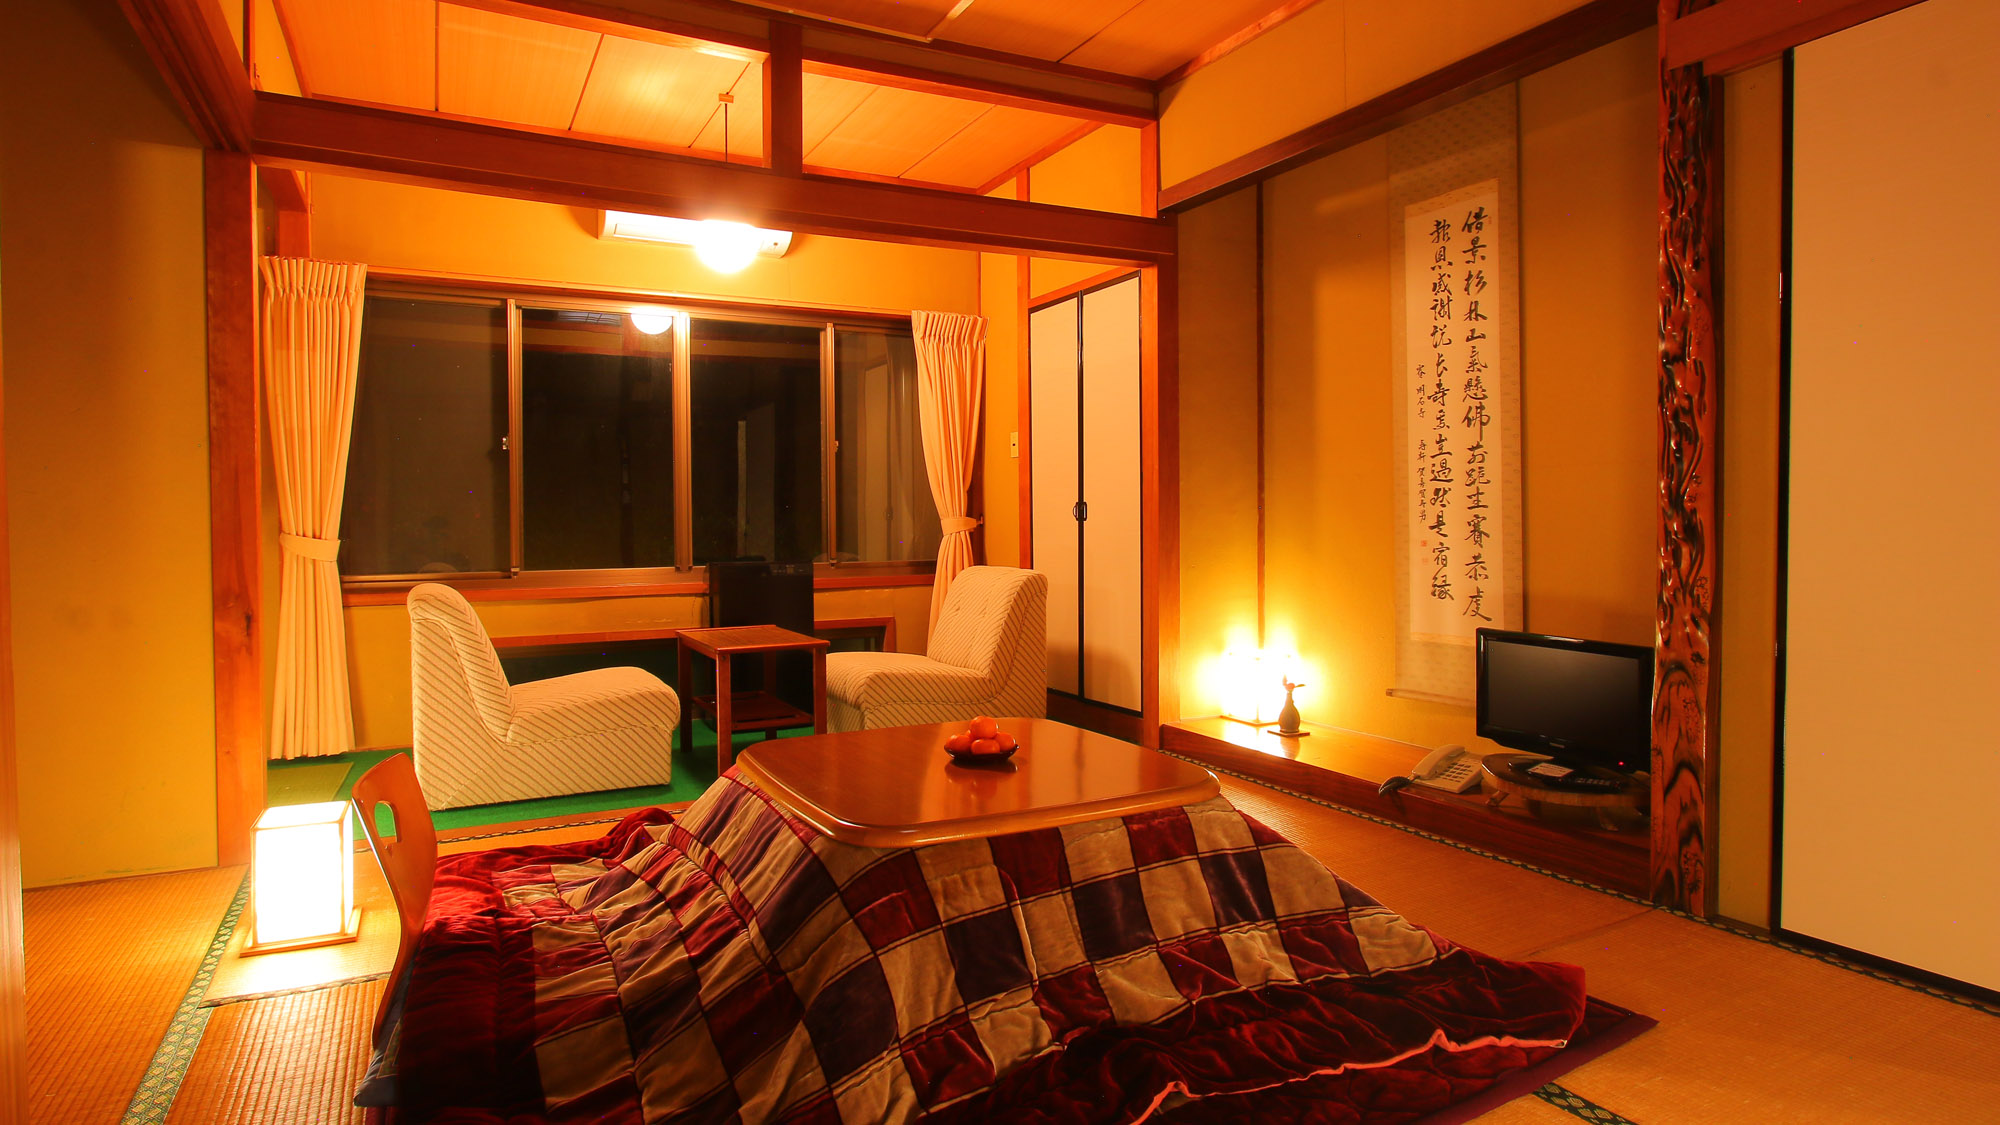 【冬・和室】冬限定のお籠りプランでは、こたつとミカンをご用意しております。日本の冬を感じるひと時を